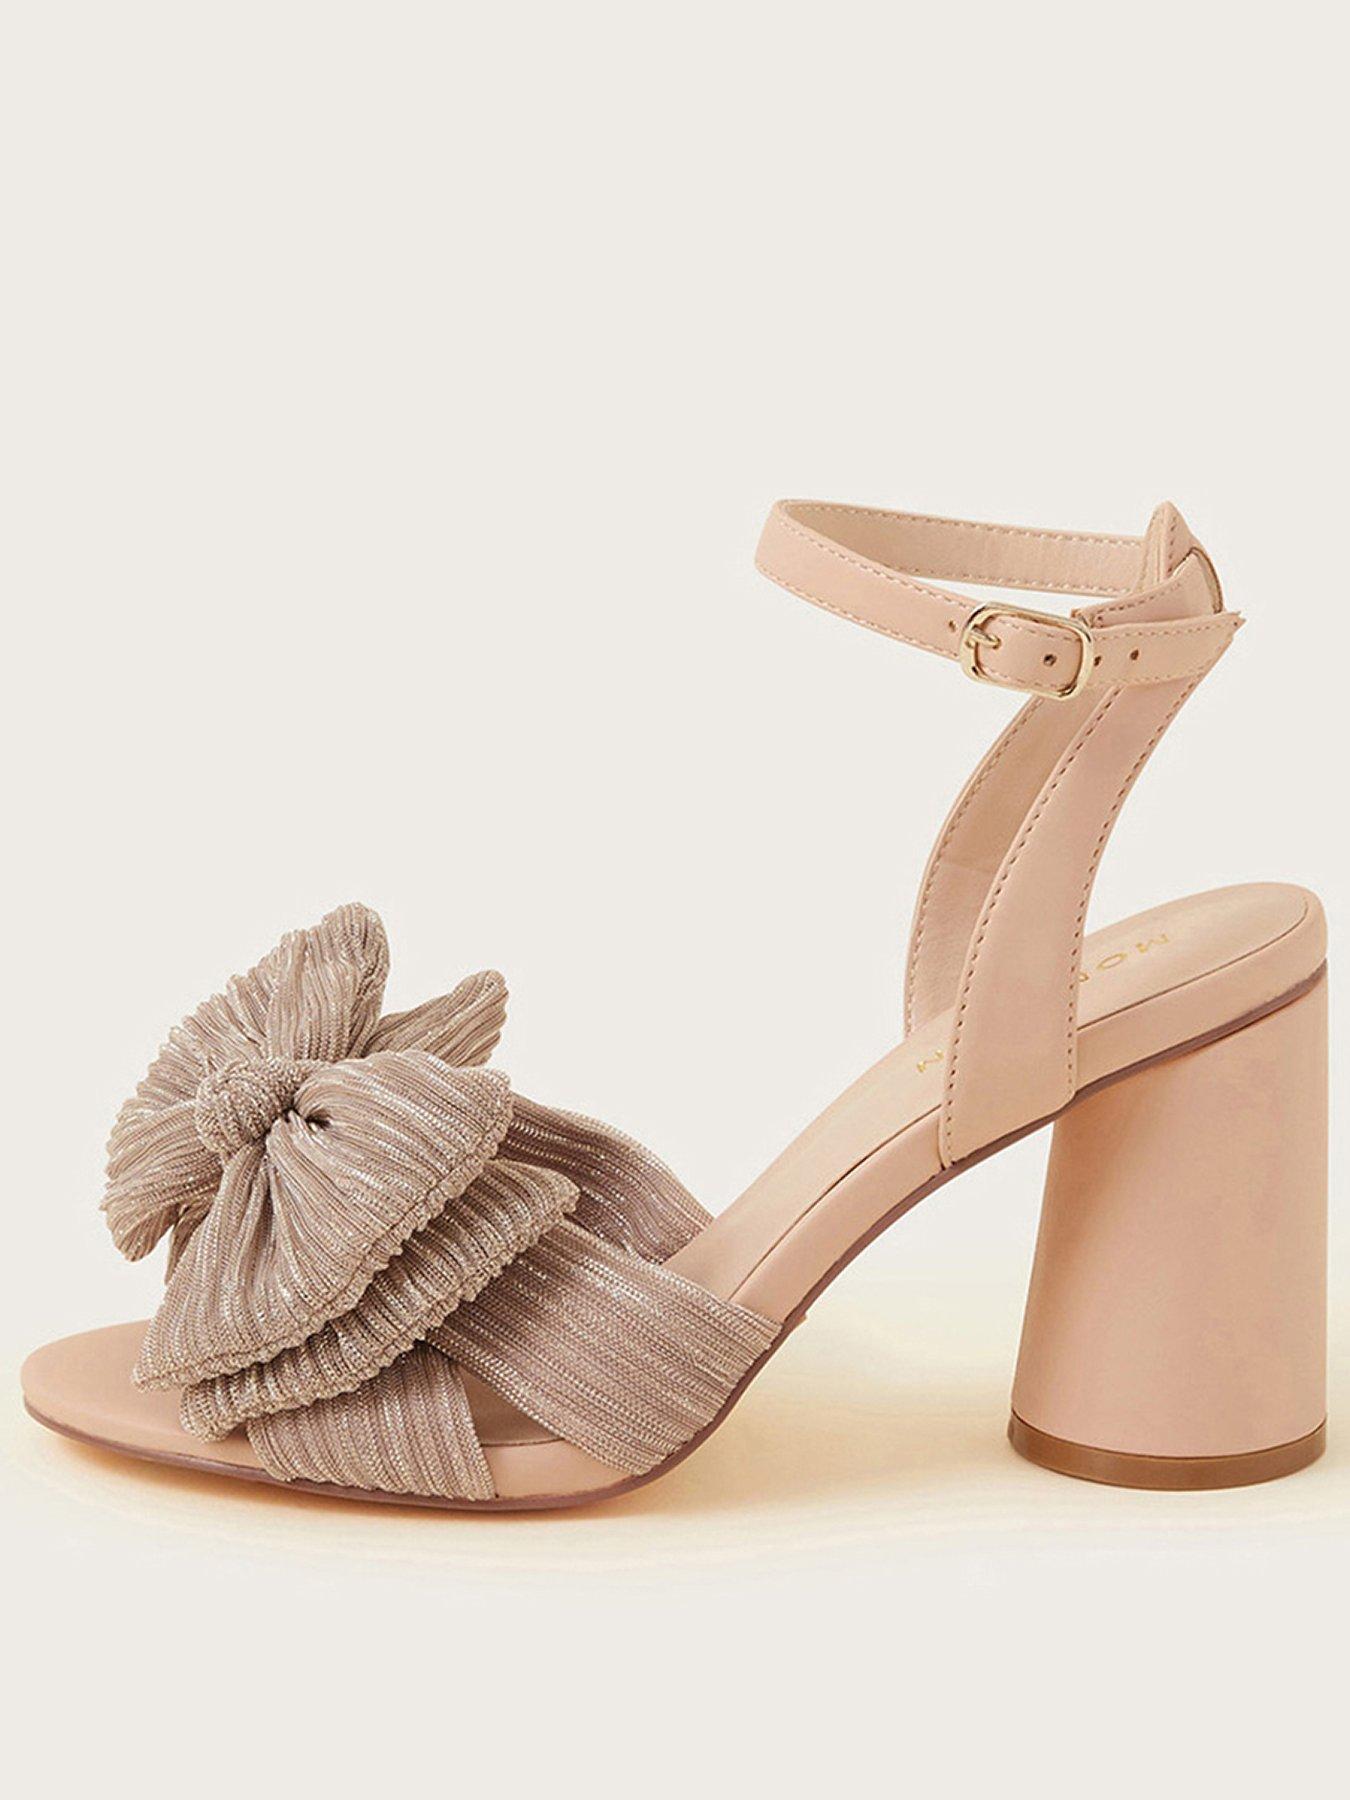 Buy Go Block Heel Sandals for Womens (2.5 Inch Heel) - MK-101_12 Black at  Amazon.in